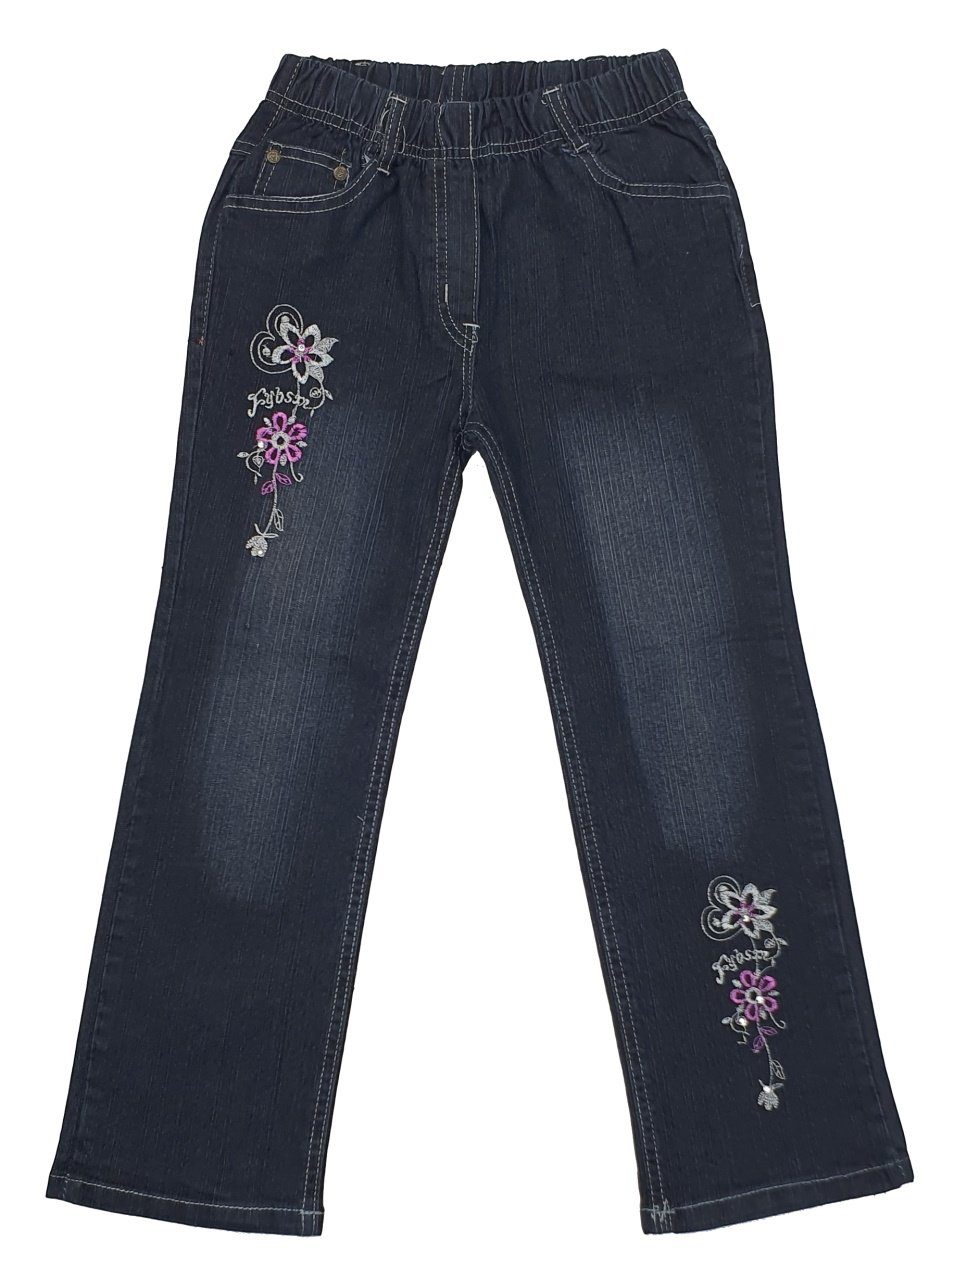 Girls Fashion Bequeme Jeans Bequeme Mädchen Jeans mit rundum Gummizug, M32 | Jeans